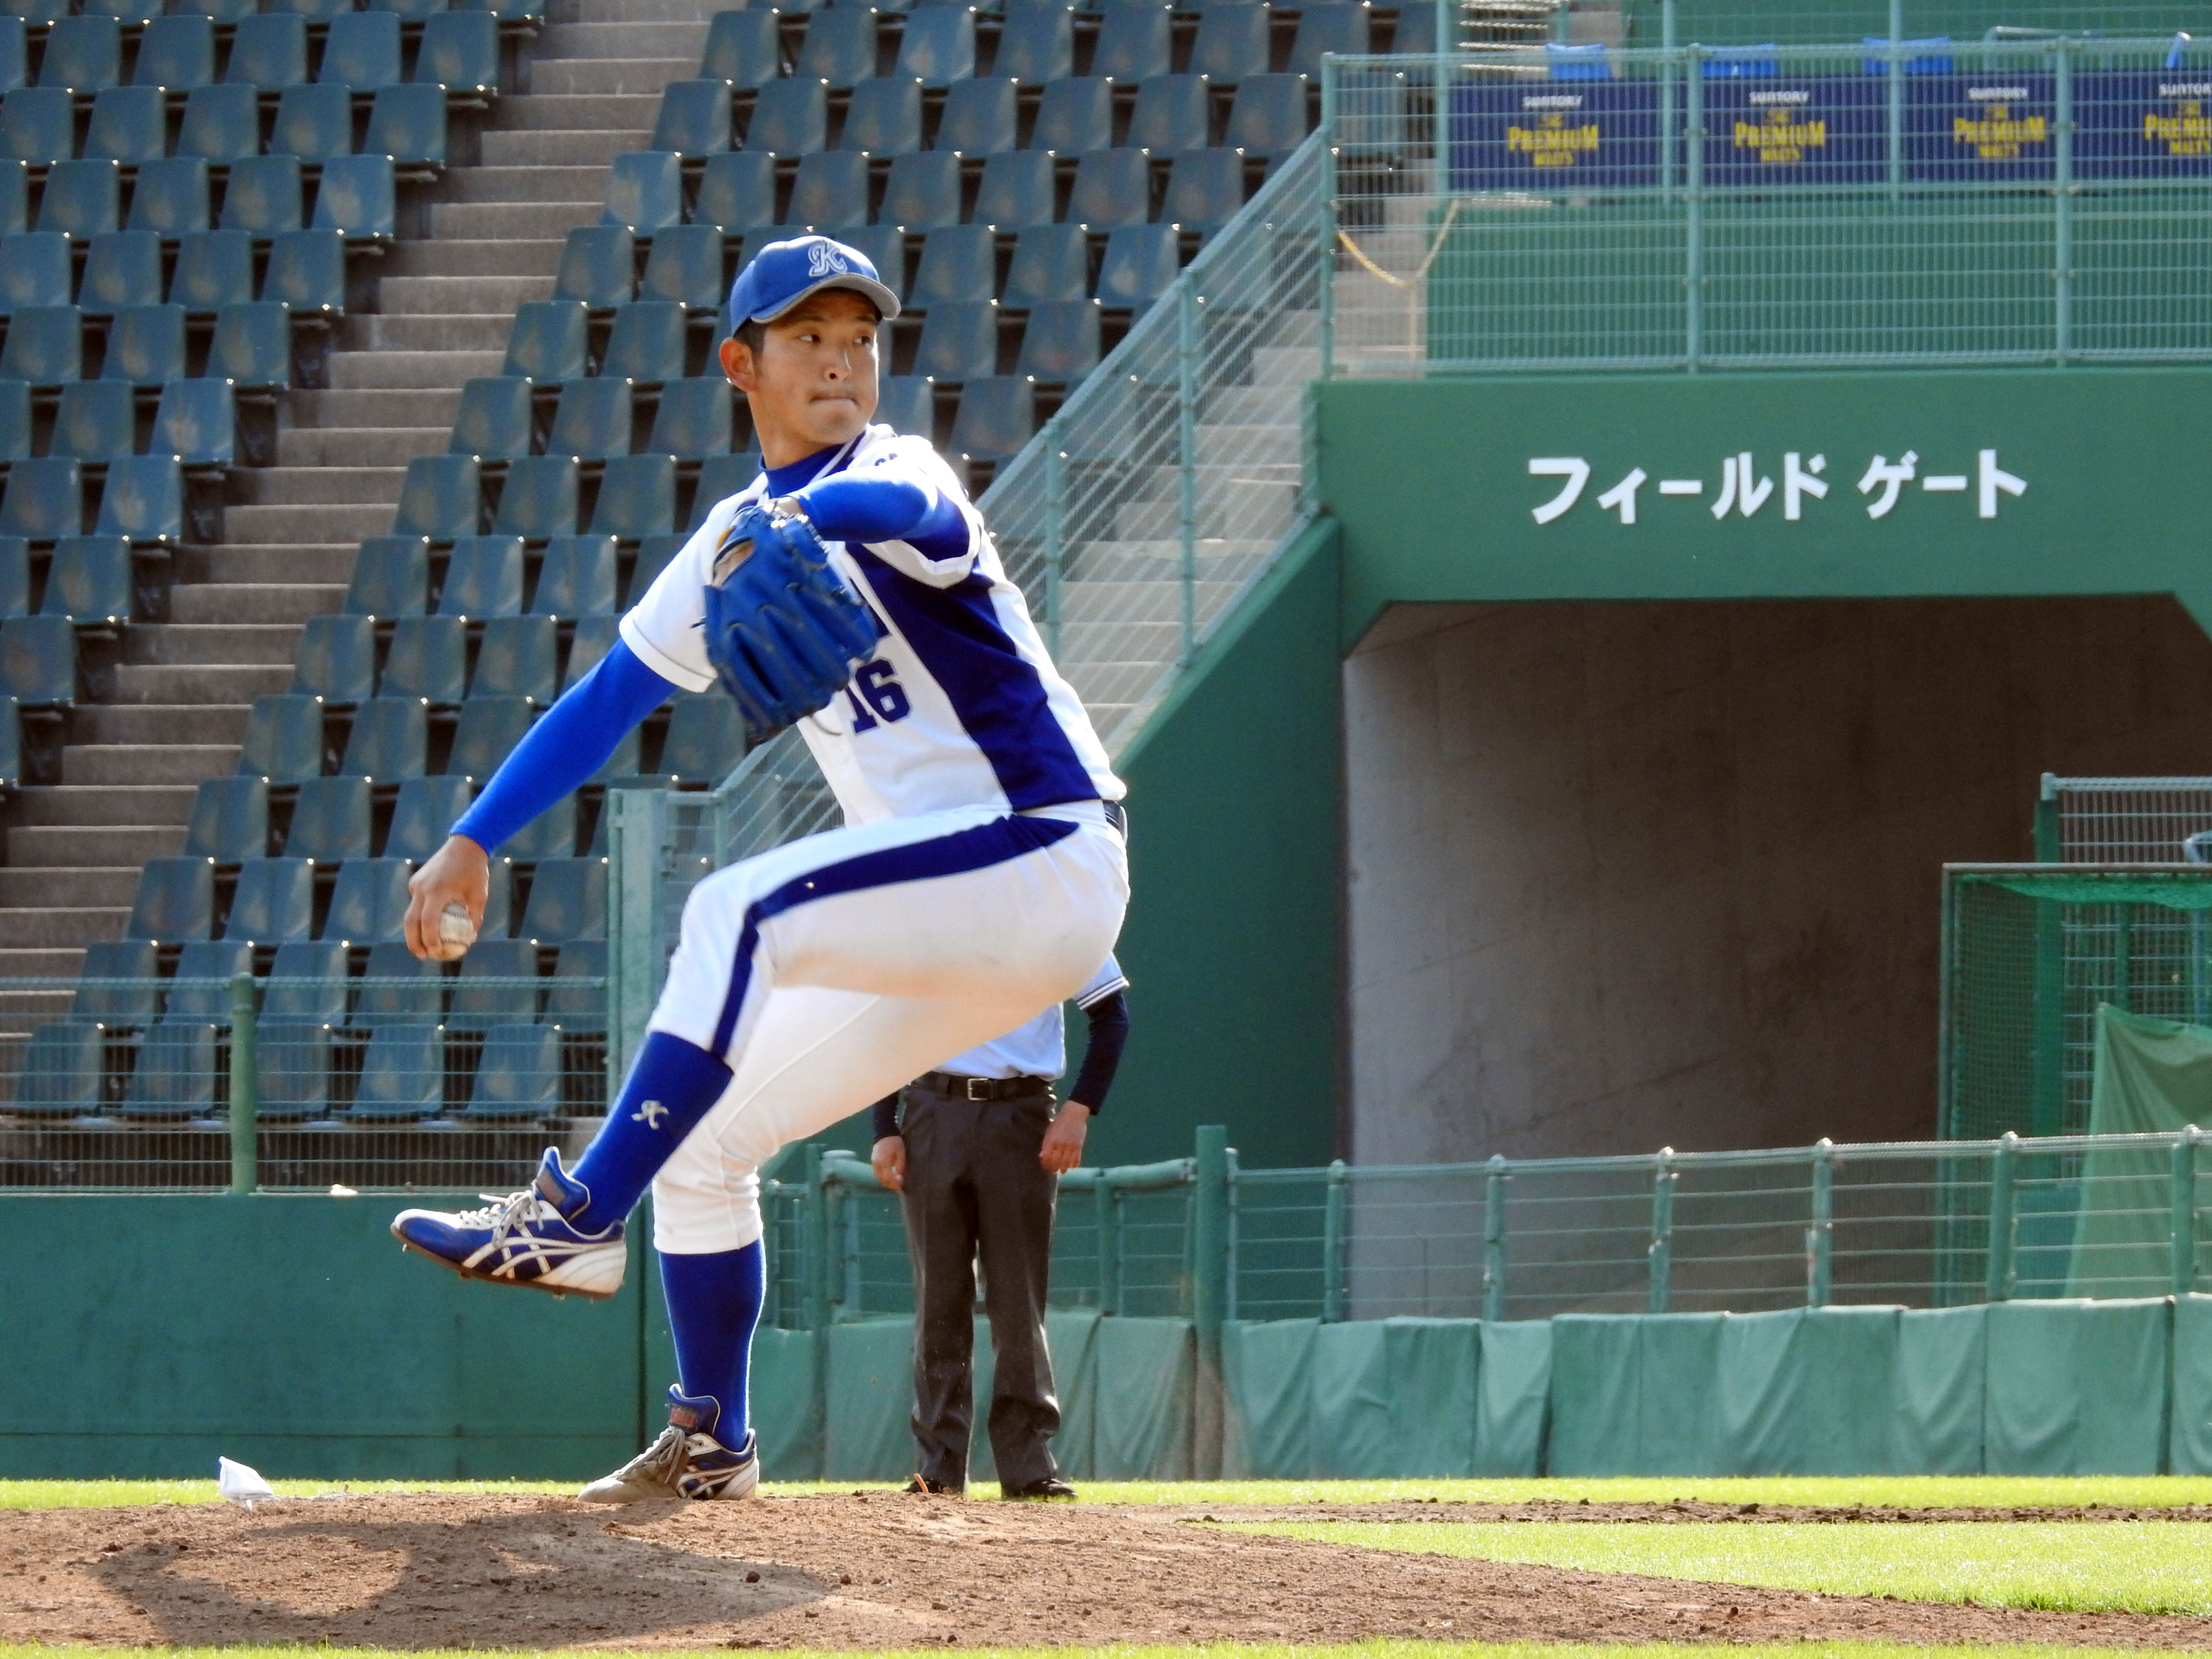 http://blog.osaka-ue.ac.jp/sports/2020/03/190420_3.jpg